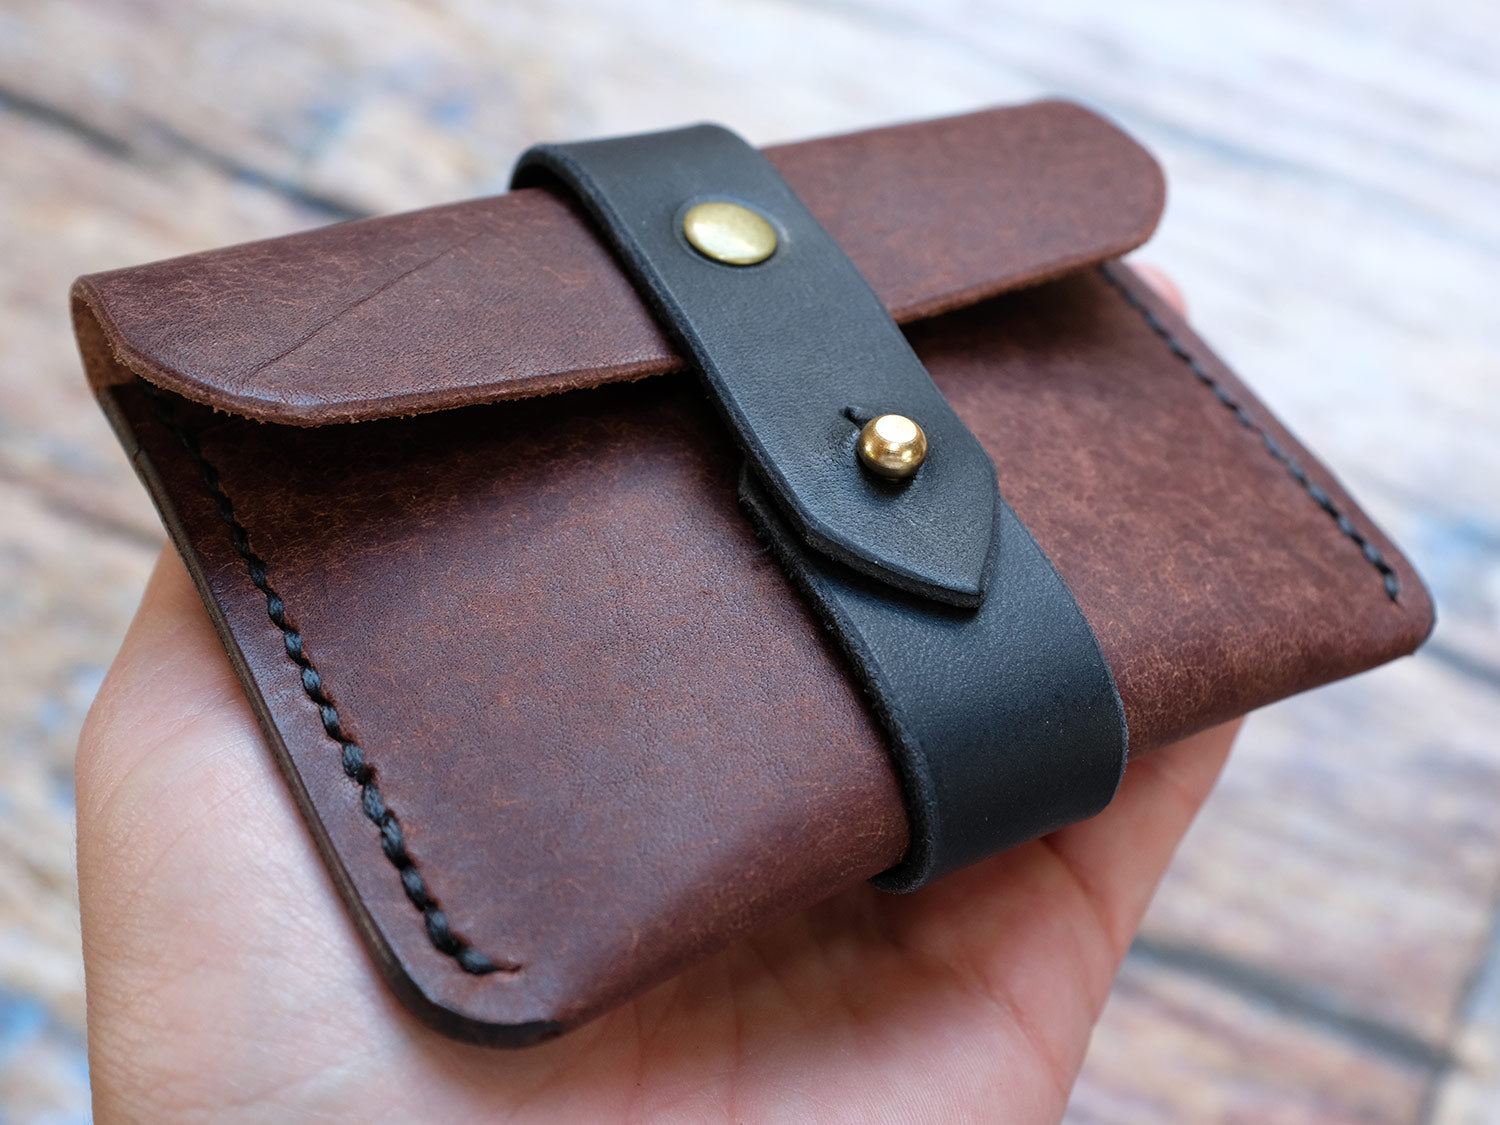 Italian Leather Strap Wallet